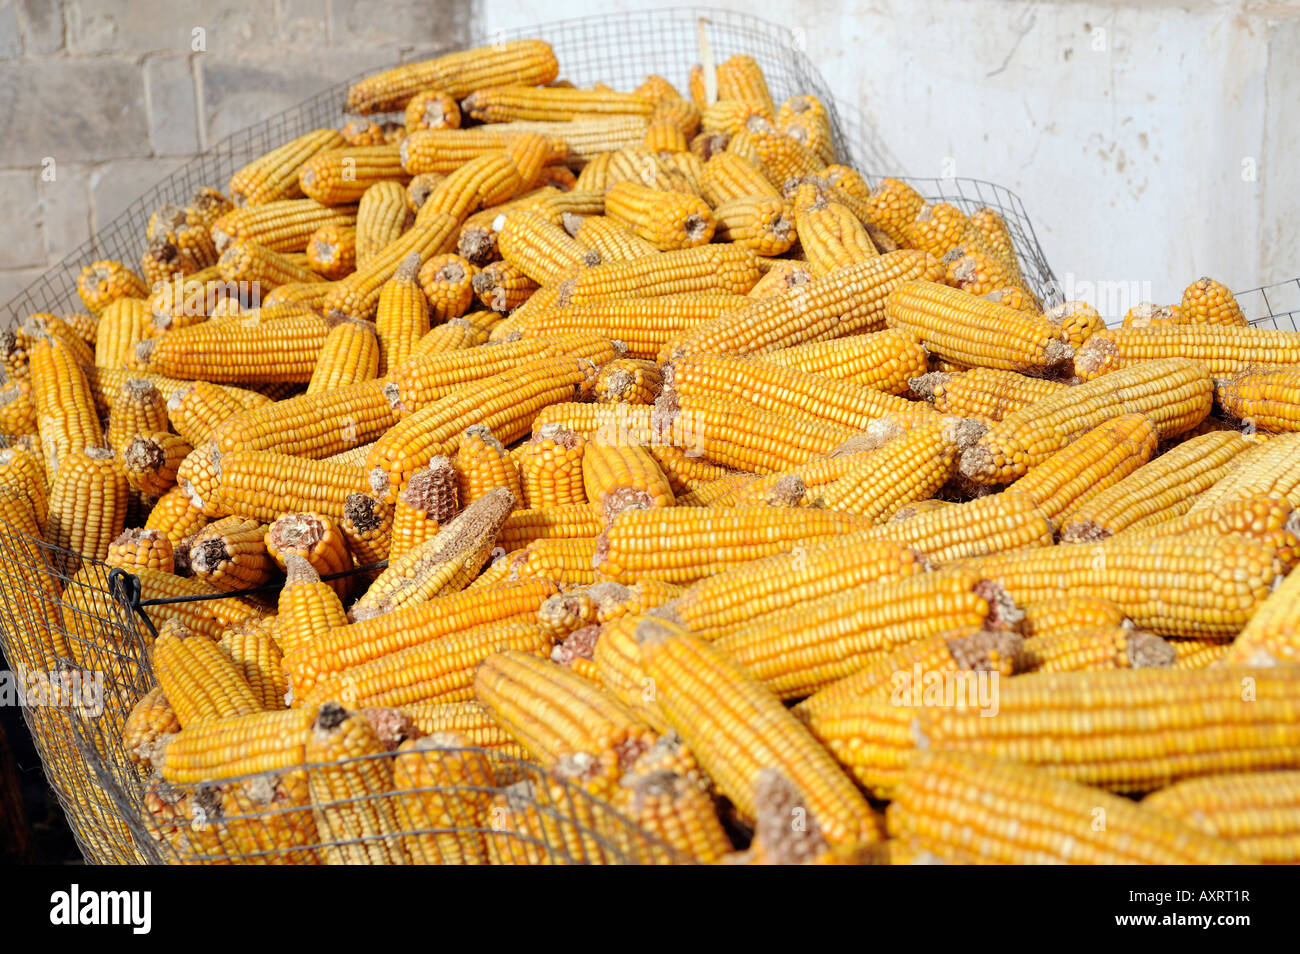 corn maize Stock Photo